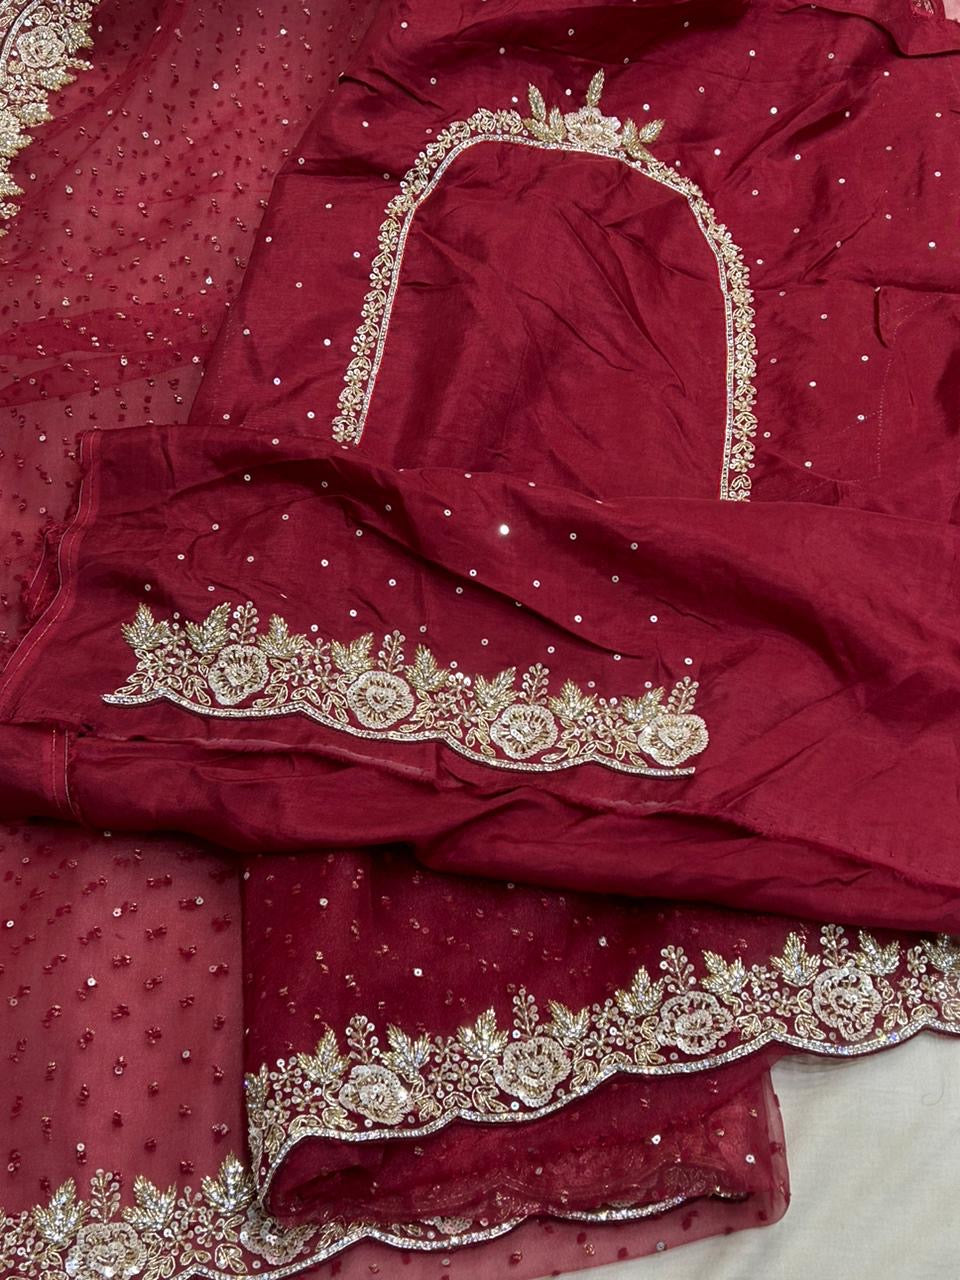 Red Organza Saree Indian saree Beautiful Saree women sarees